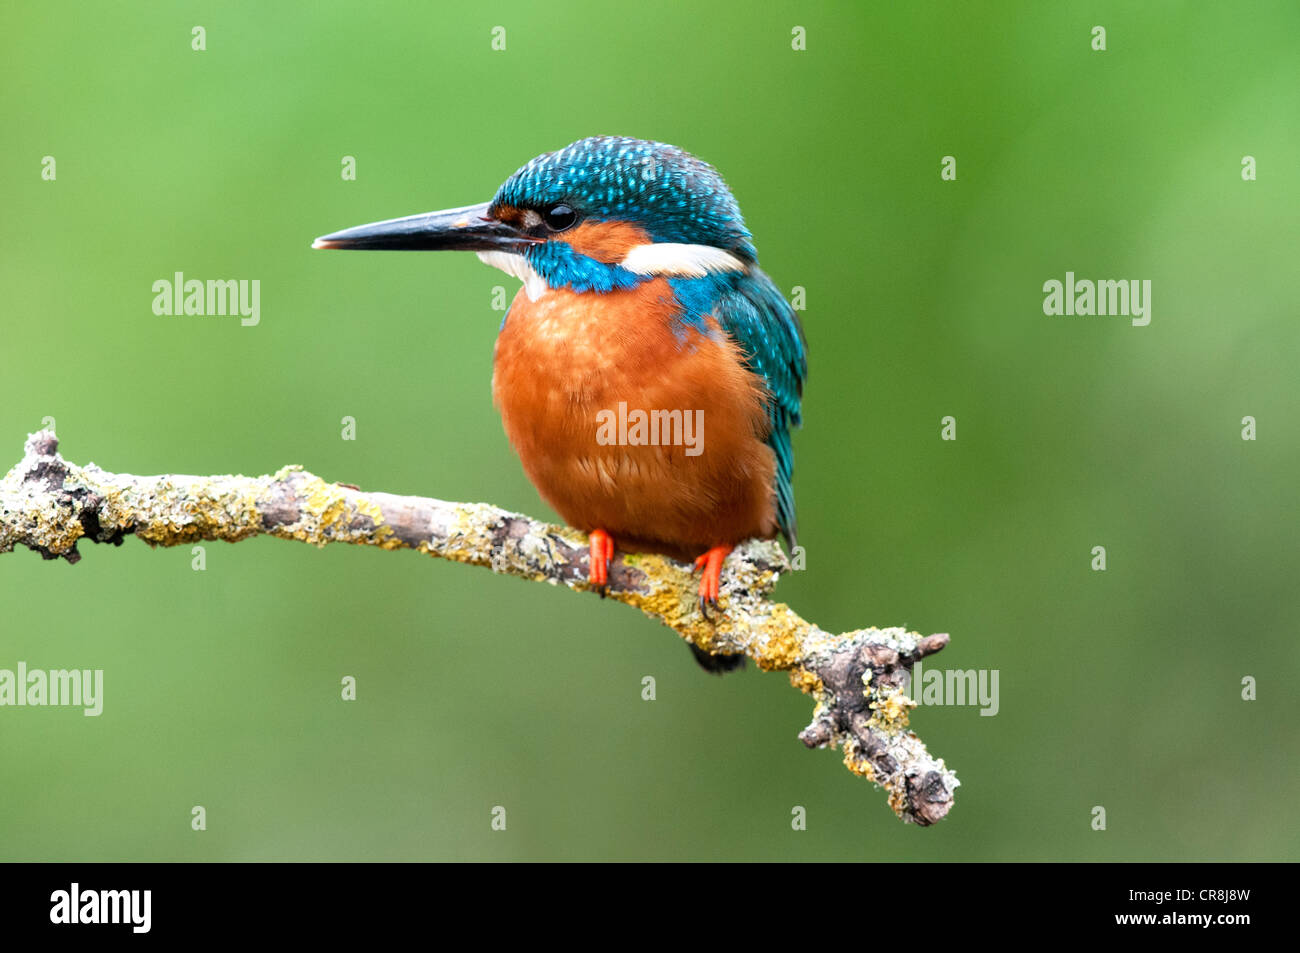 Kingfisher masculinos sentados en un palo mirando izquierda Foto de stock